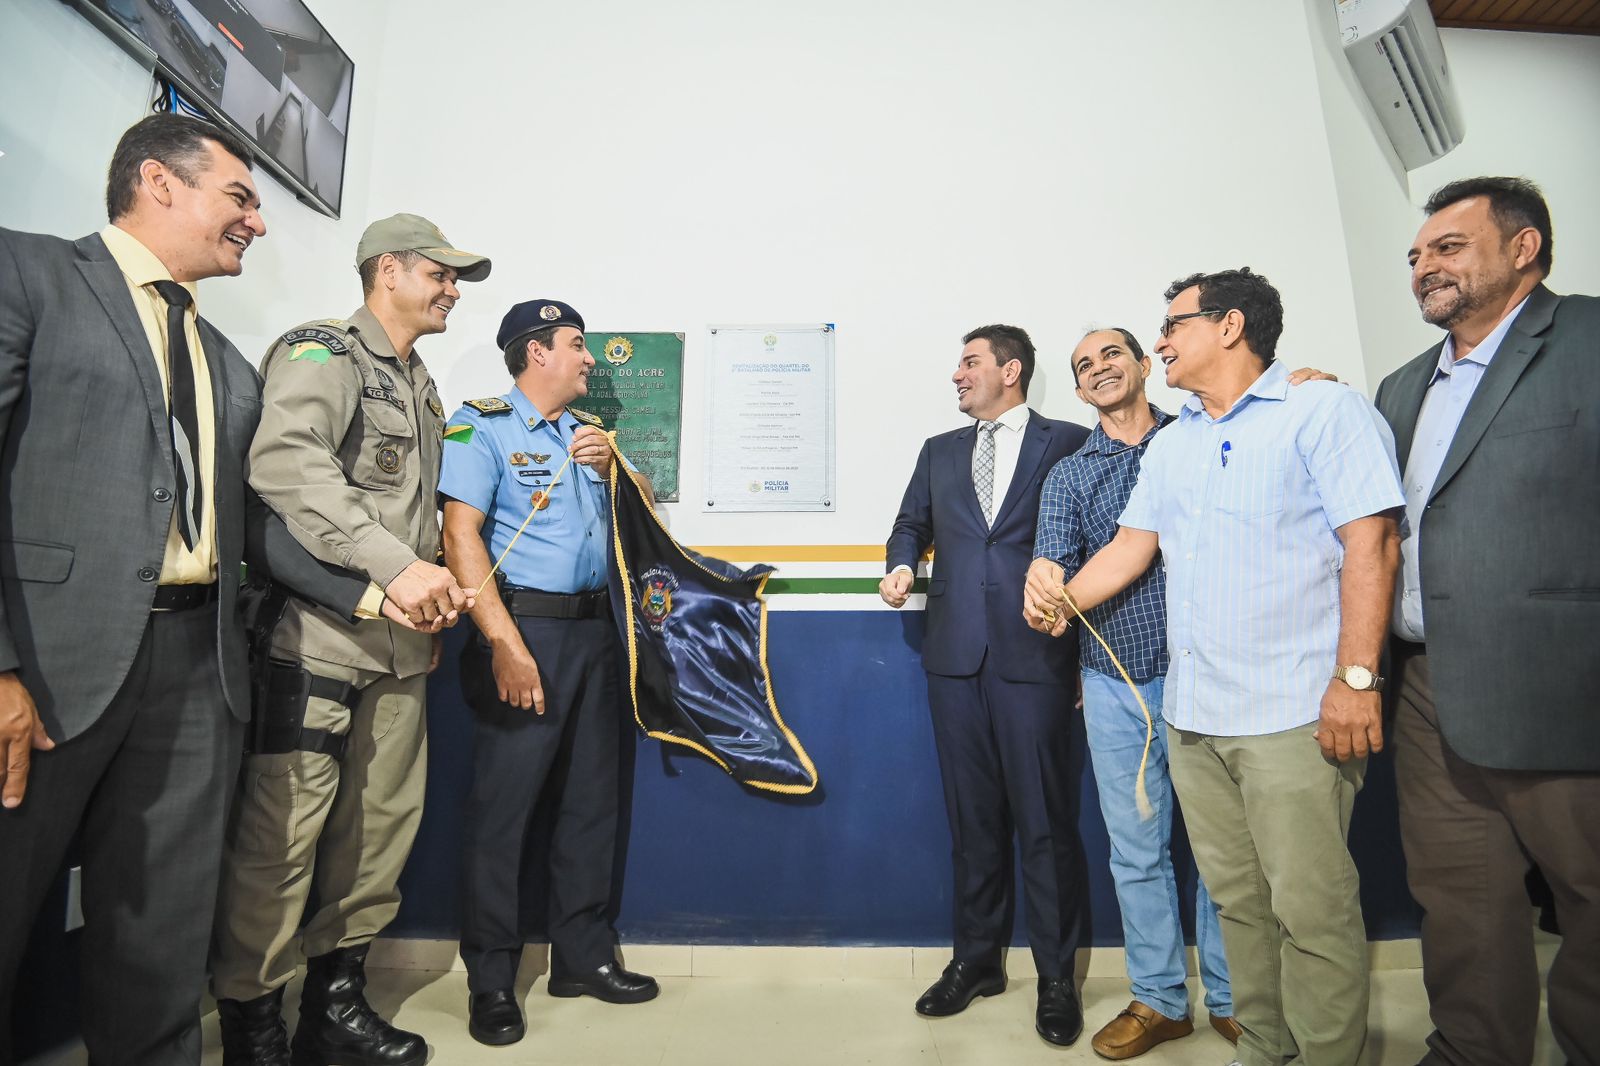 Governo do Acre inicia obras no Batalhão da Polícia Militar de Cruzeiro do  Sul - Noticias do Acre